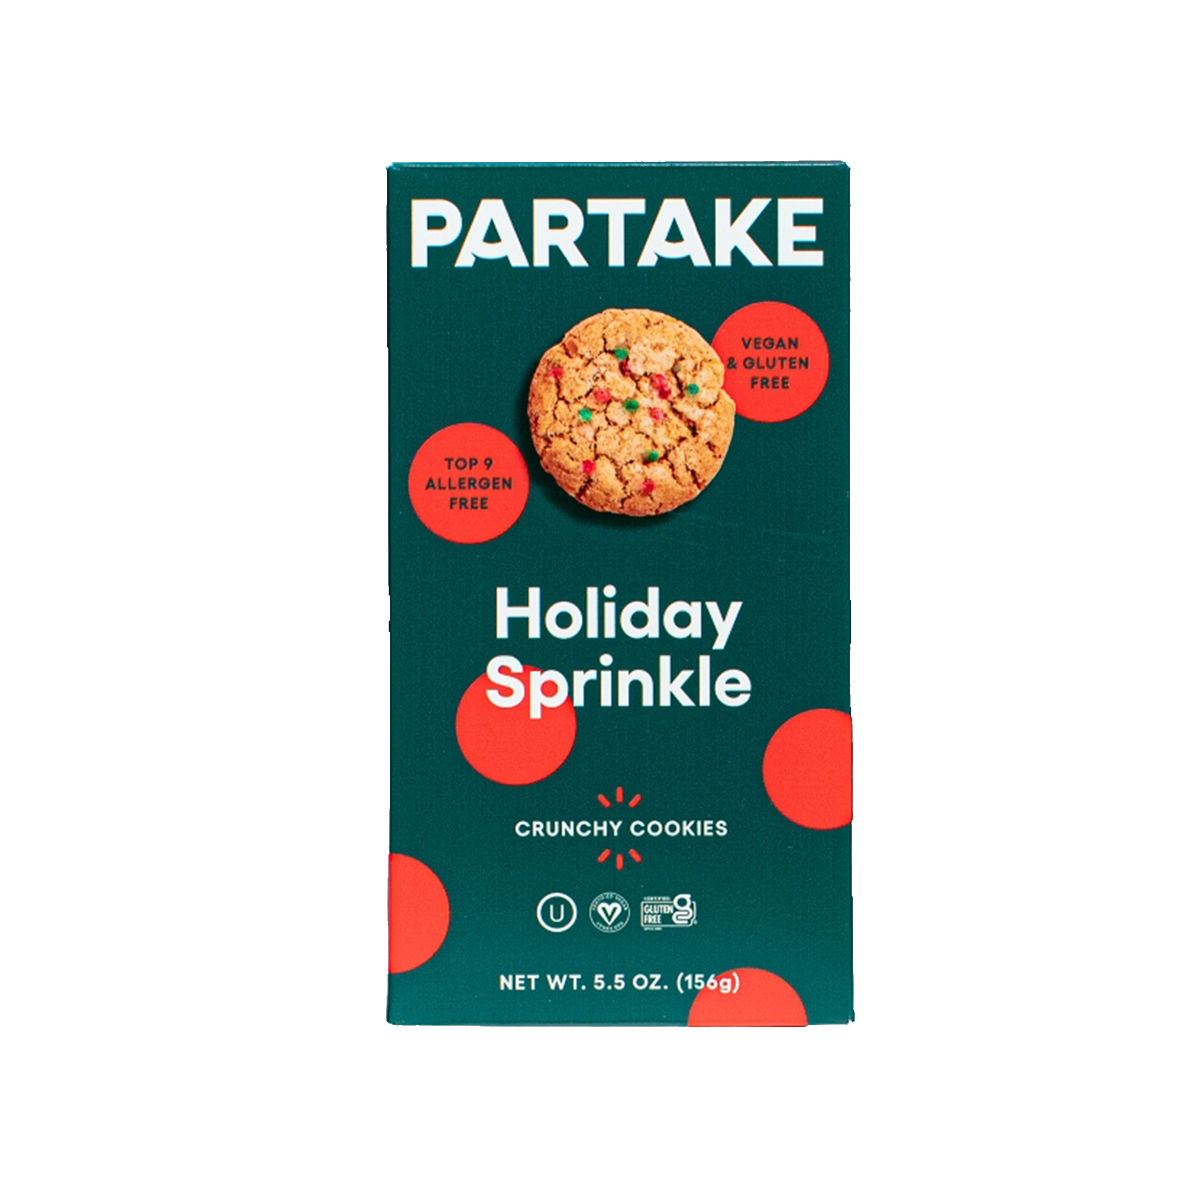 Crunchy Holiday Sprinkle Cookies (Partake / Partake)